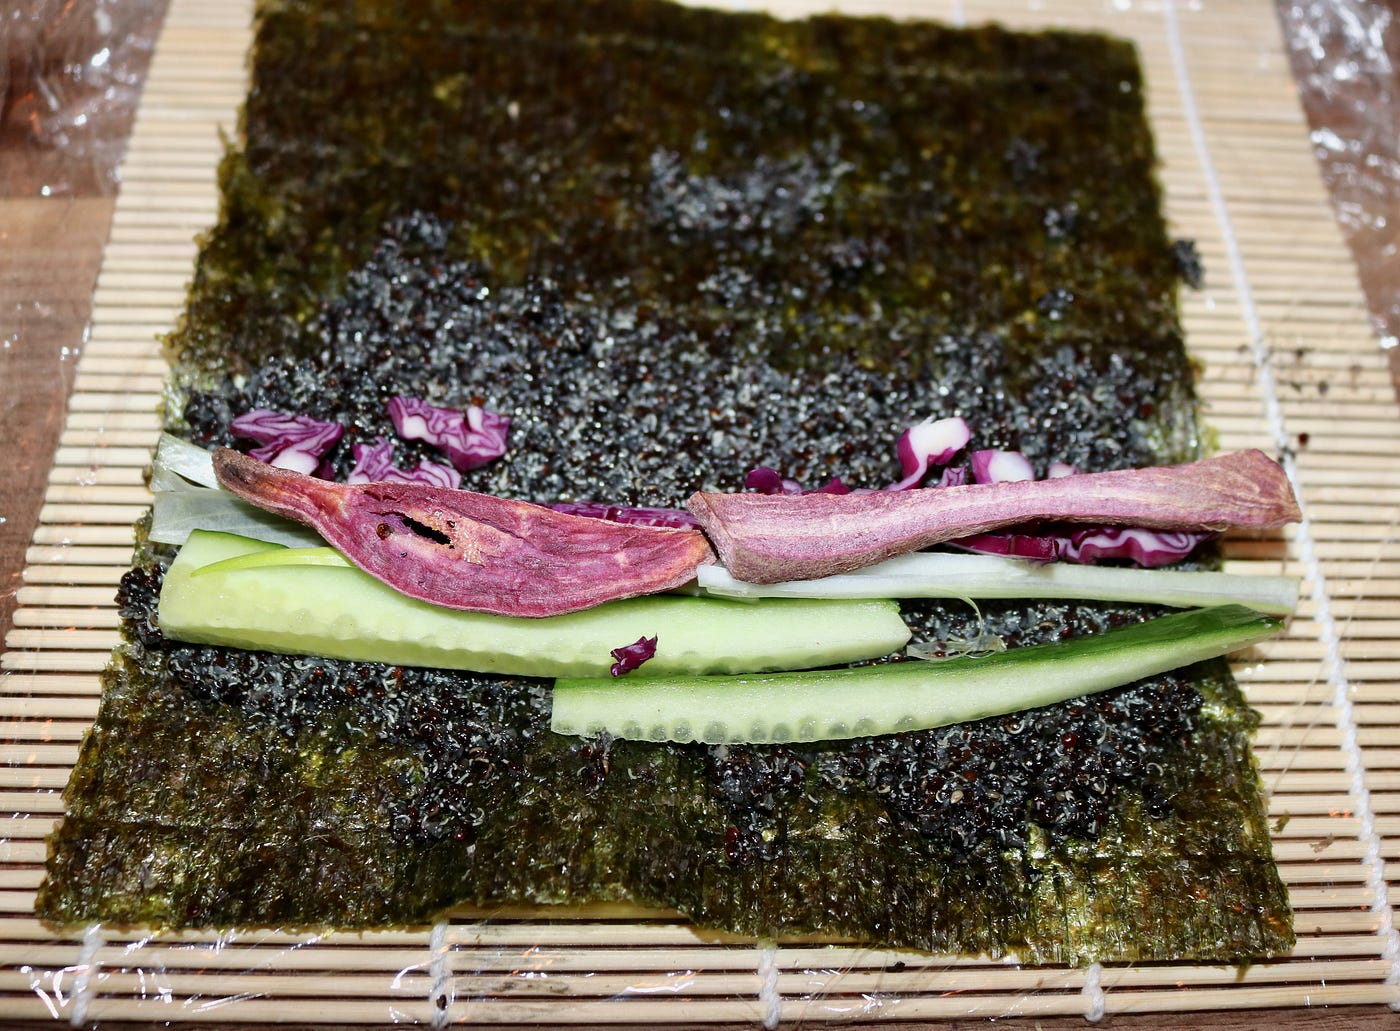 Vegan brown rice sushi - Lazy Cat Kitchen